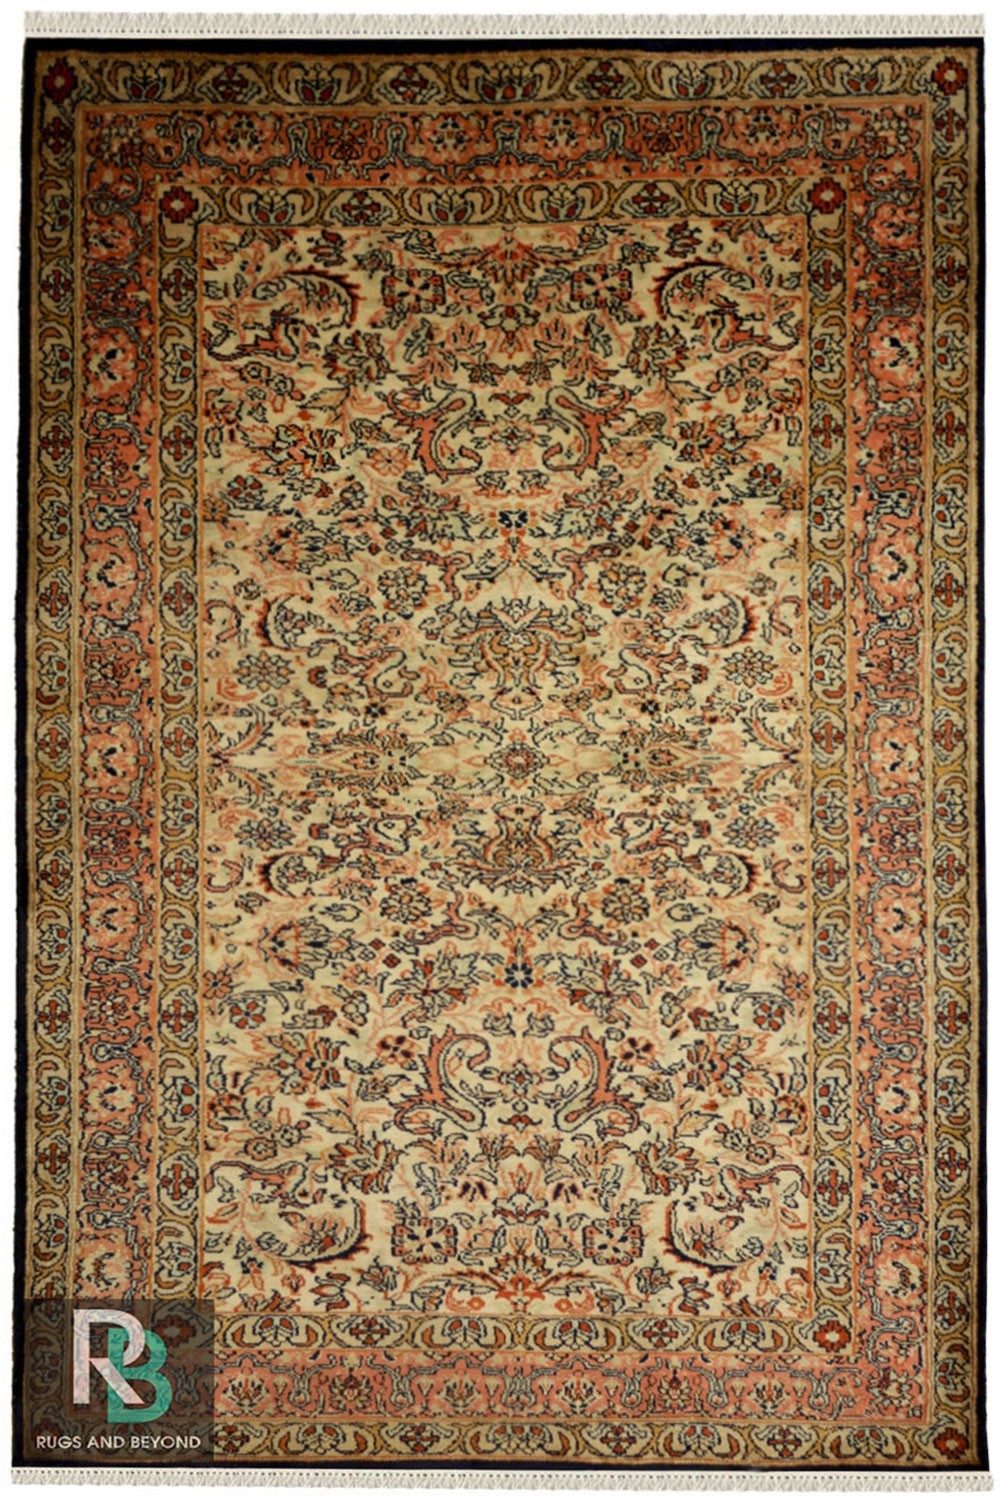 Buy Royale Fleur Kashan Silk Carpet and rugs handmade in India